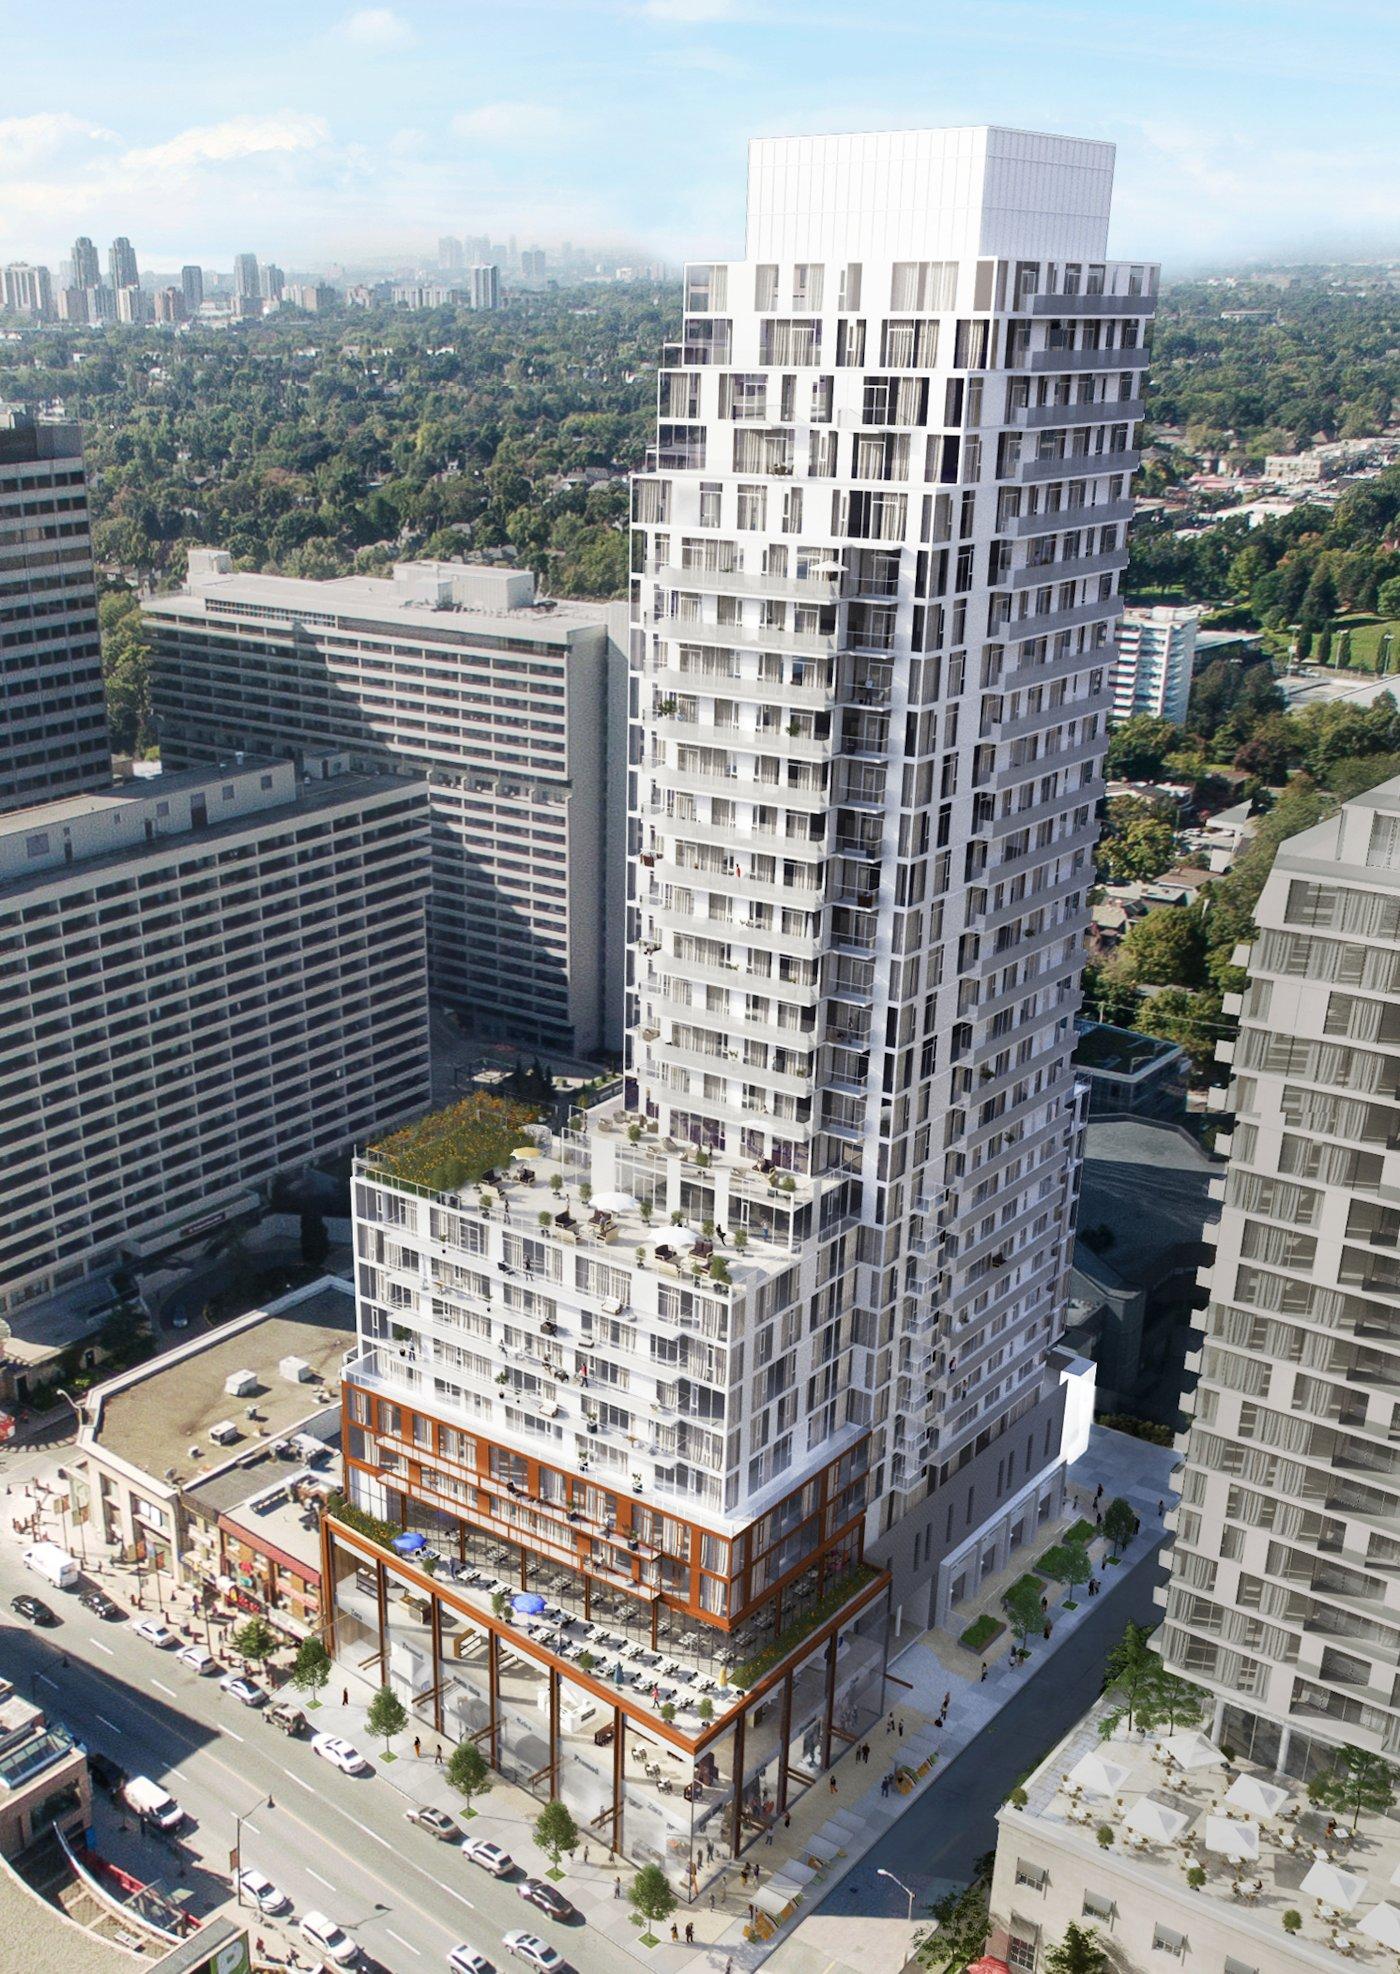 Mid Rise Condos - Toronto's Neighbourly Buildings